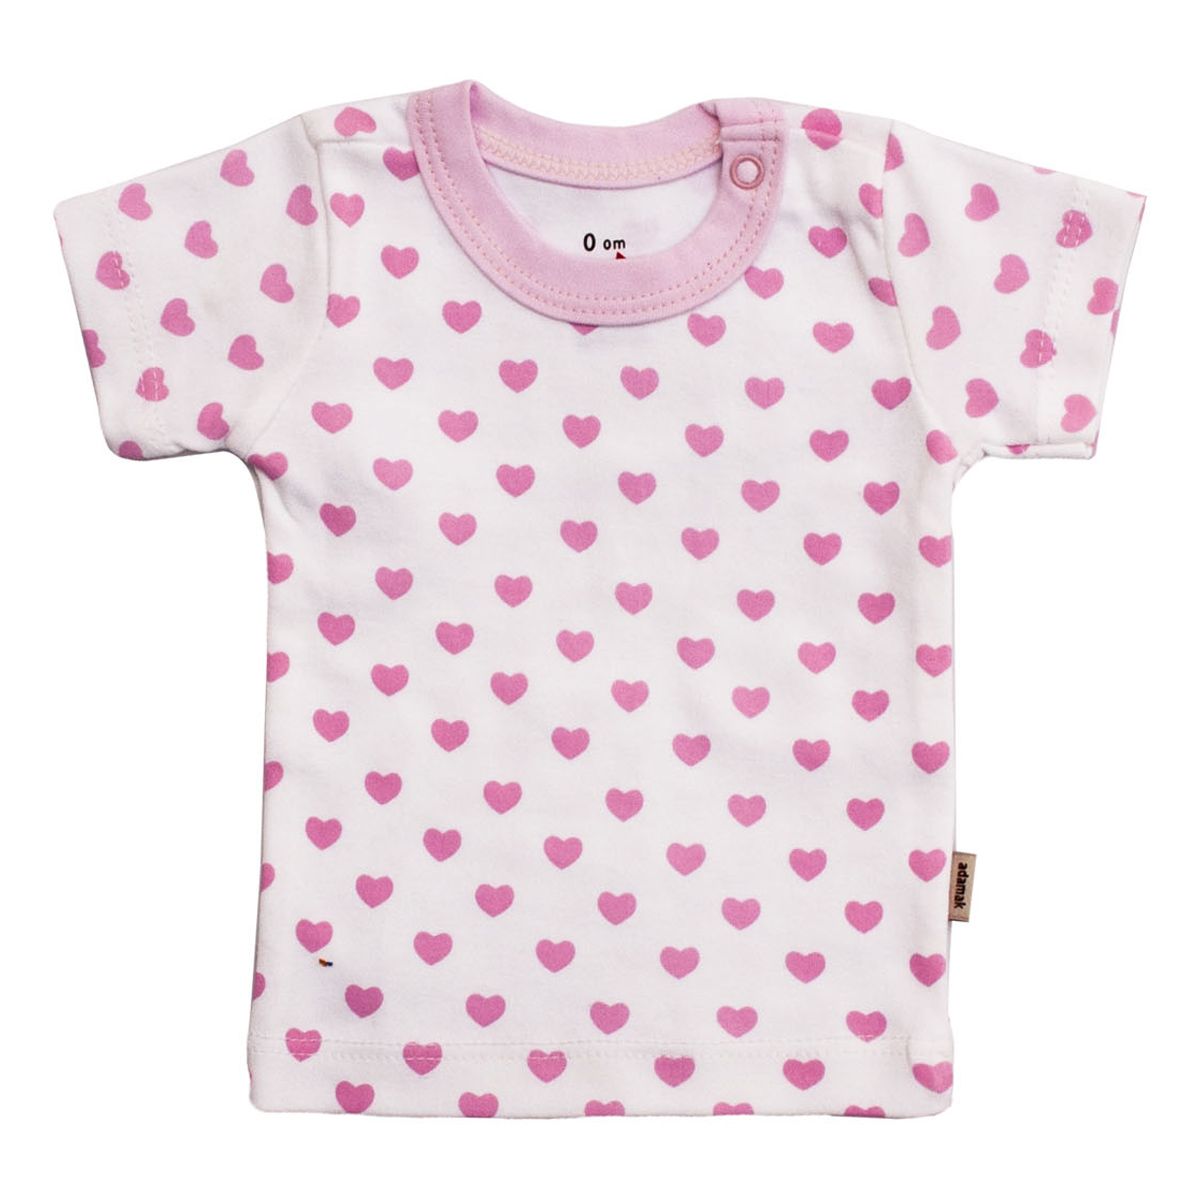  تی شرت آستین کوتاه نوزادی آدمک طرح قلب -  - 1